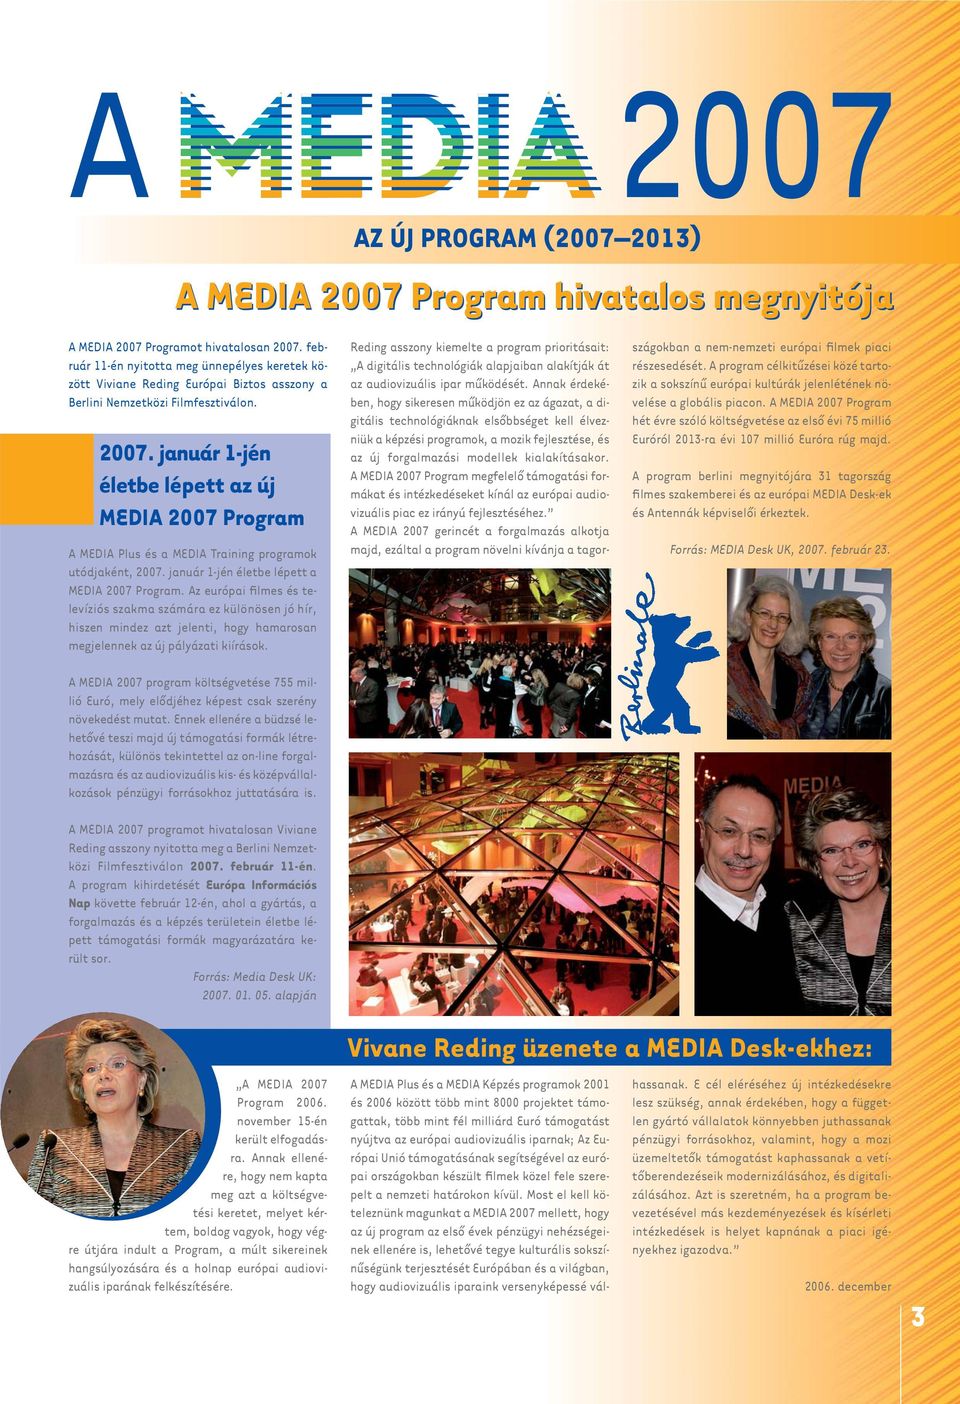 január 1-jén életbe lépett az új MEDIA 2007 Program A MEDIA Plus és a MEDIA Training programok utódjaként, 2007. január 1-jén életbe lépett a MEDIA 2007 Program.